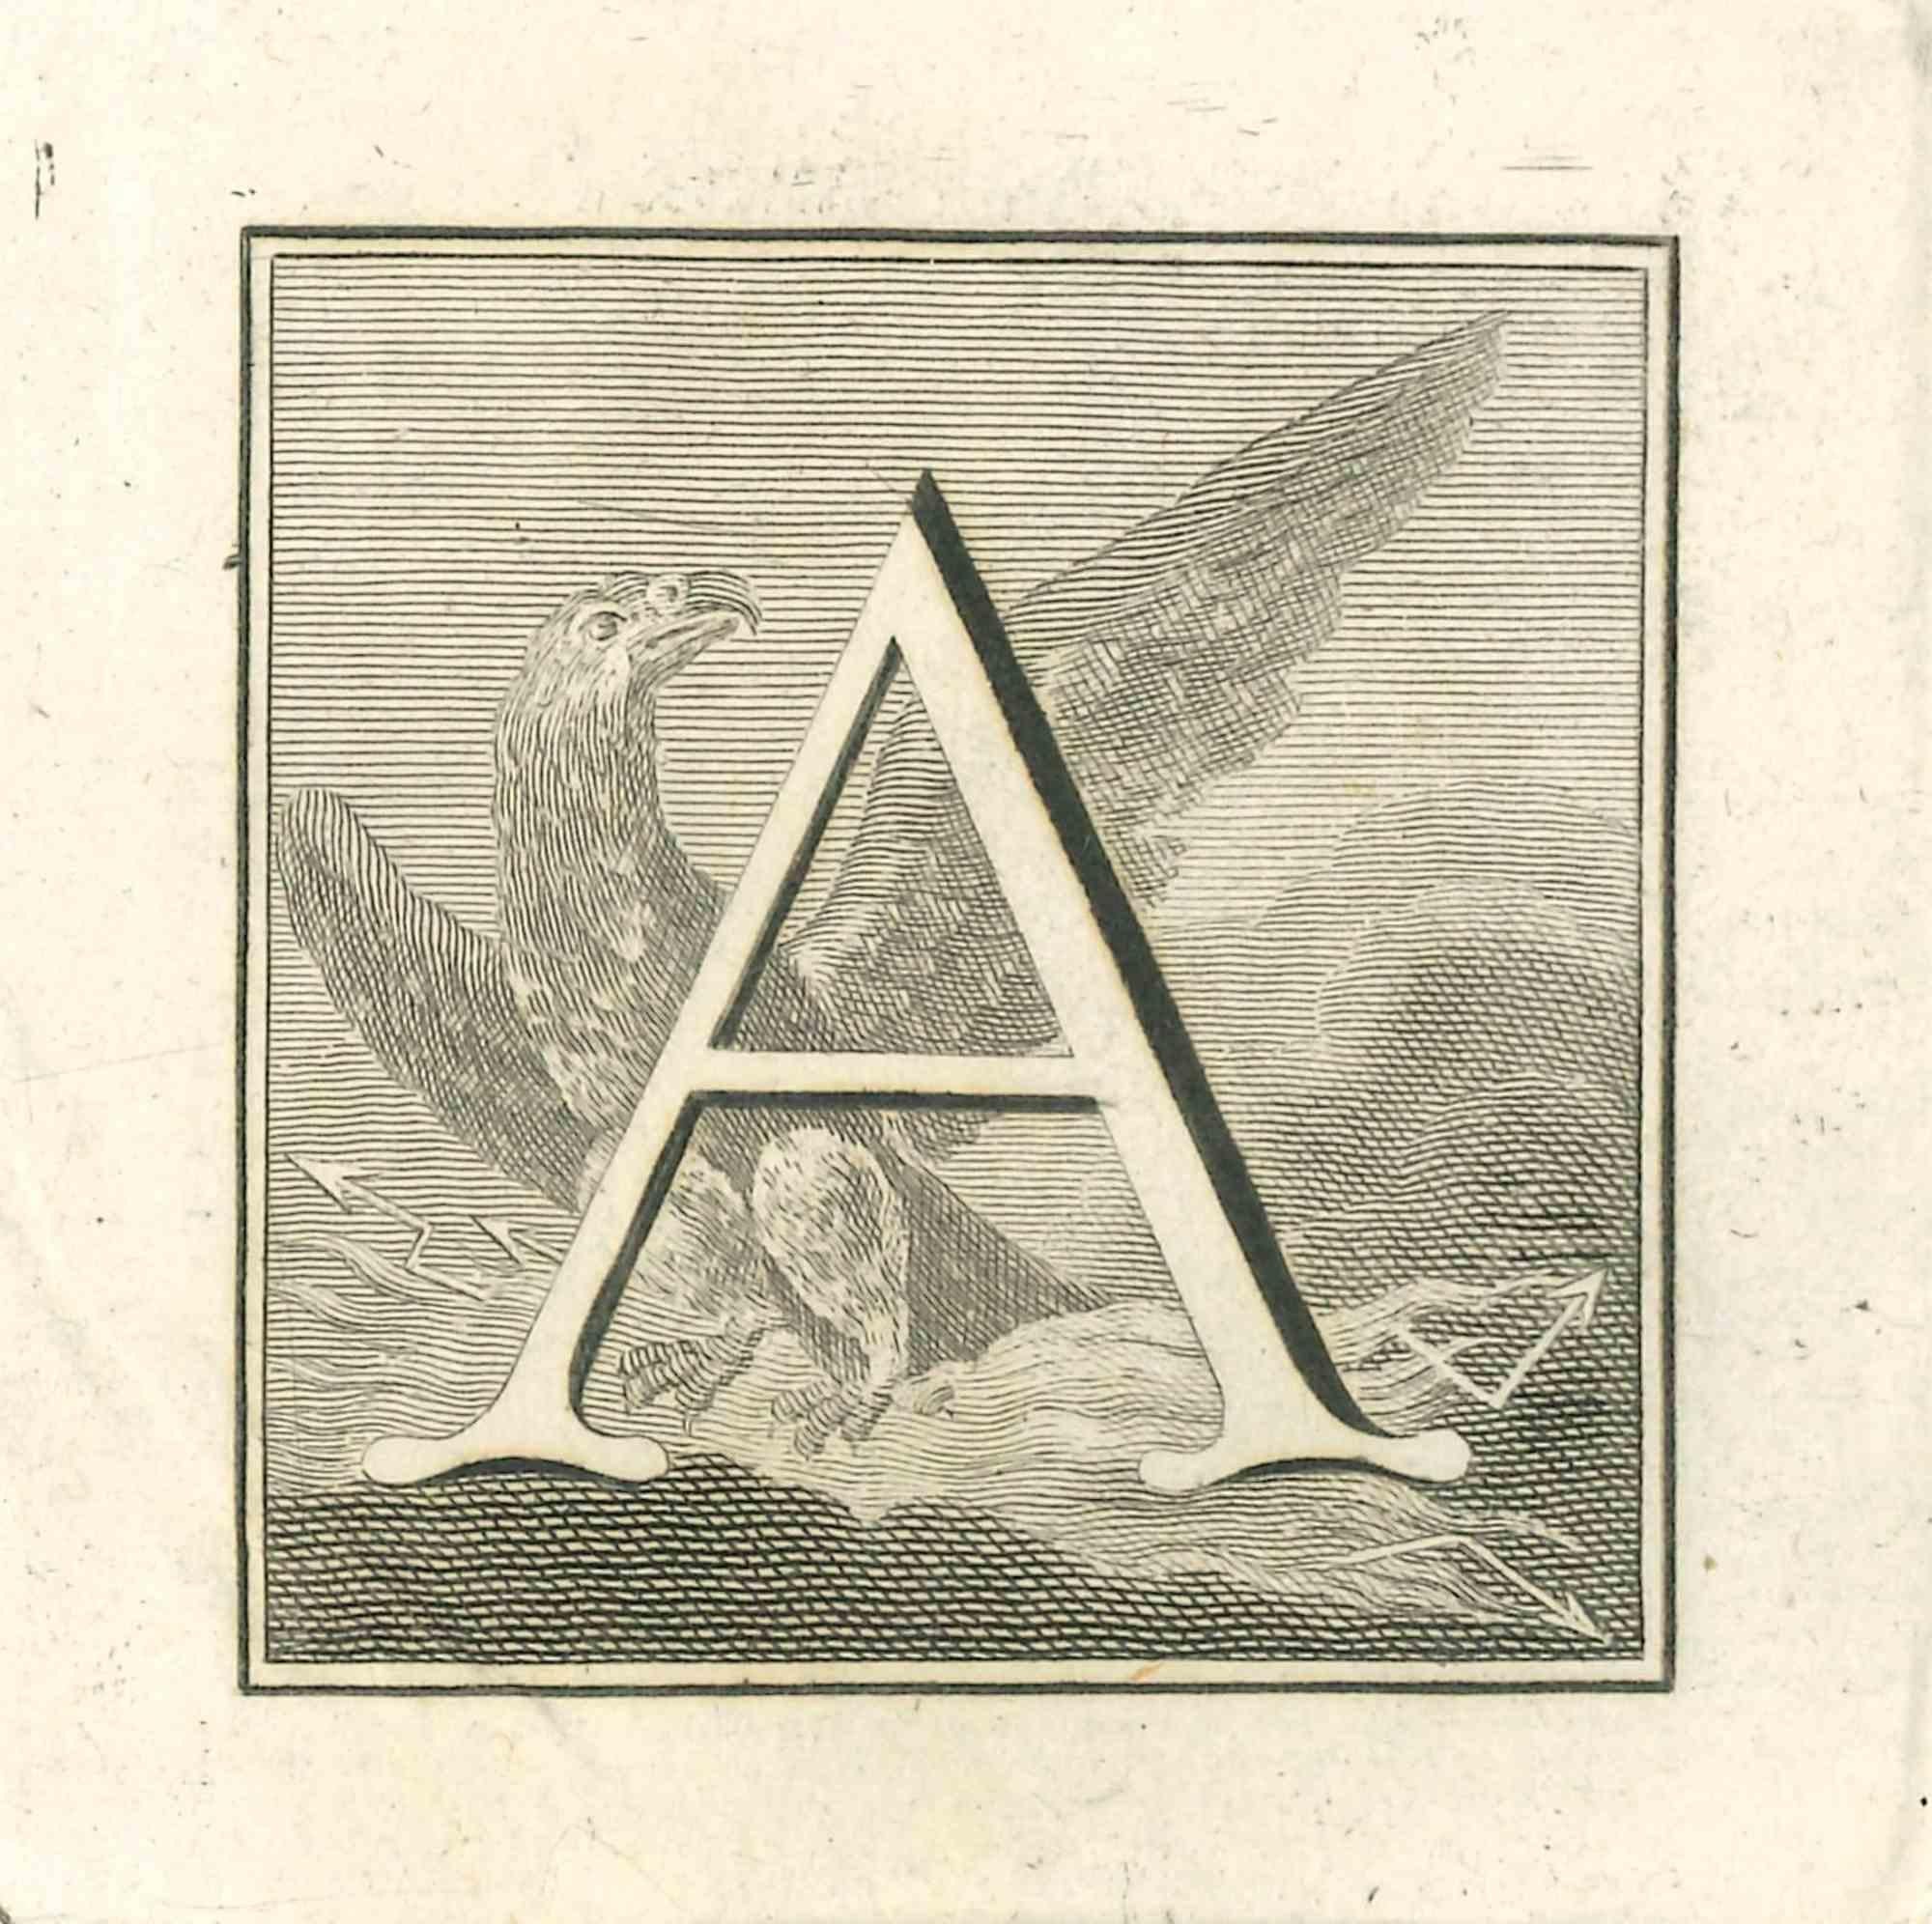 La lettre A est une gravure réalisée par Luigi Vanvitelli, artiste du XVIIIe siècle.

La gravure appartient à la suite d'estampes "Antiquités d'Herculanum exposées" (titre original : "Le Antichità di Ercolano Esposte"), un volume de huit gravures